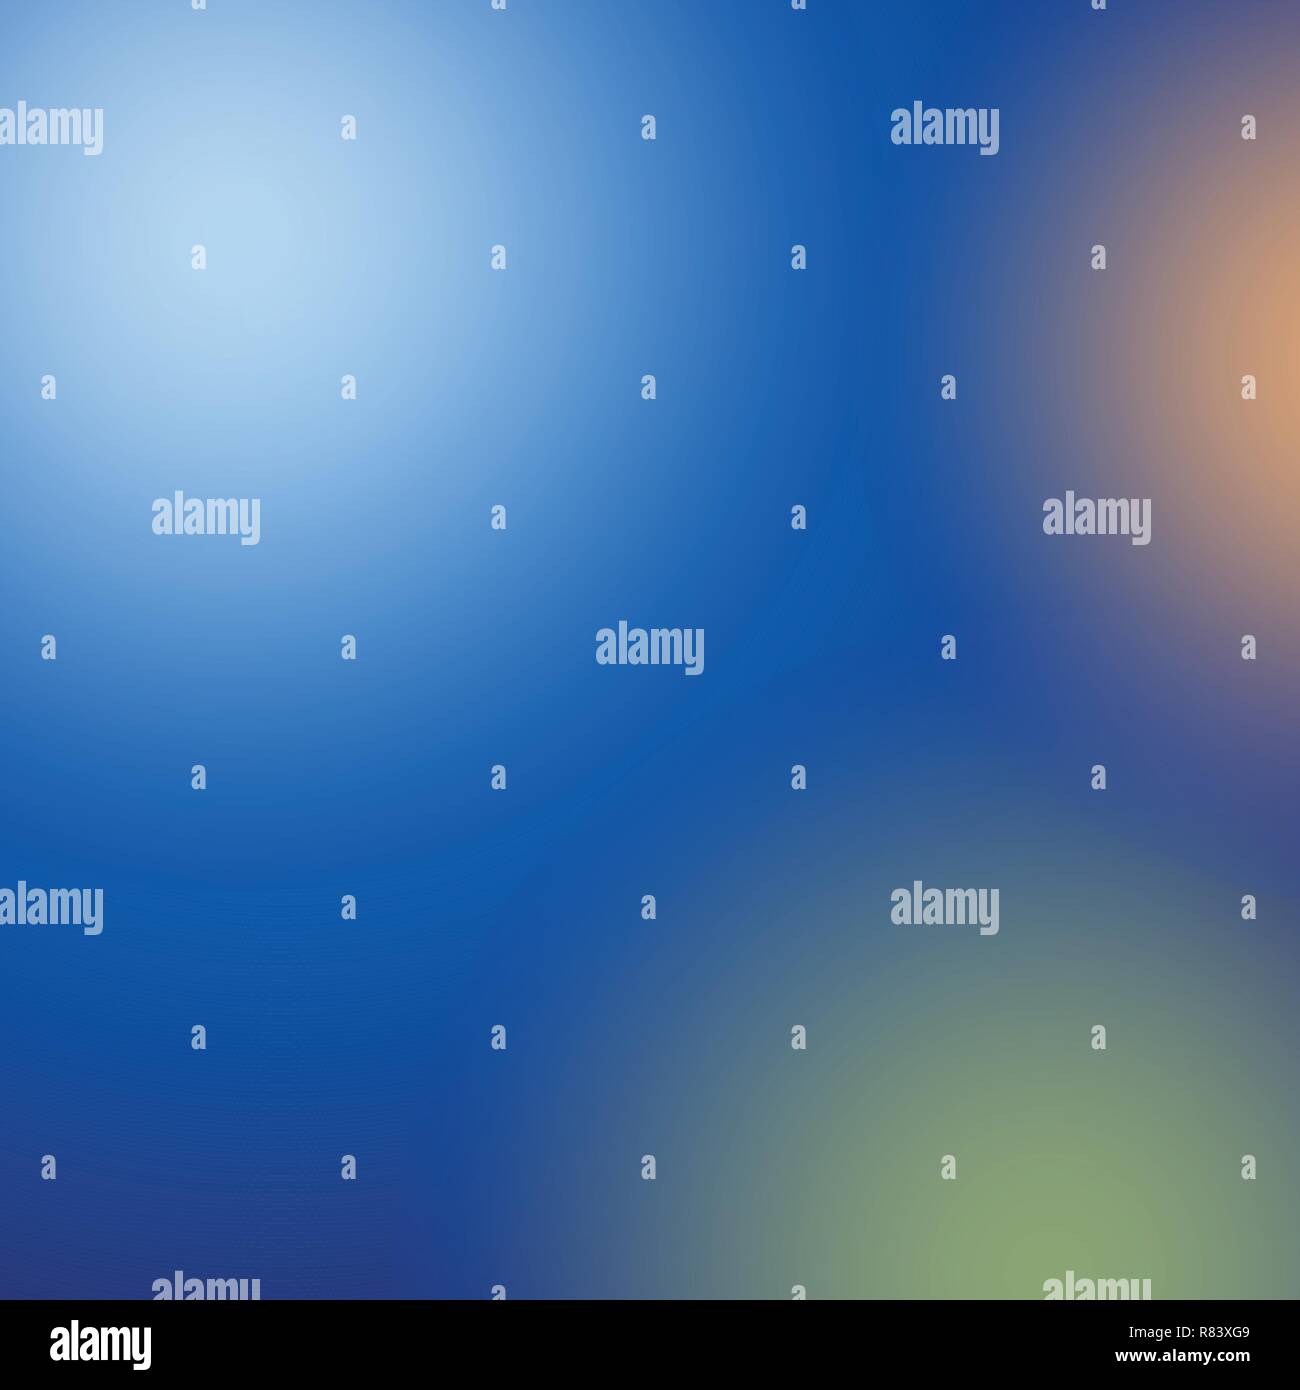 Abstrakt Blau Lila unscharfer Farbübergang Hintergrund. Natur Kulisse. Vector Illustration für ihre Grafik Design, Banner oder Poster. Stock Vektor